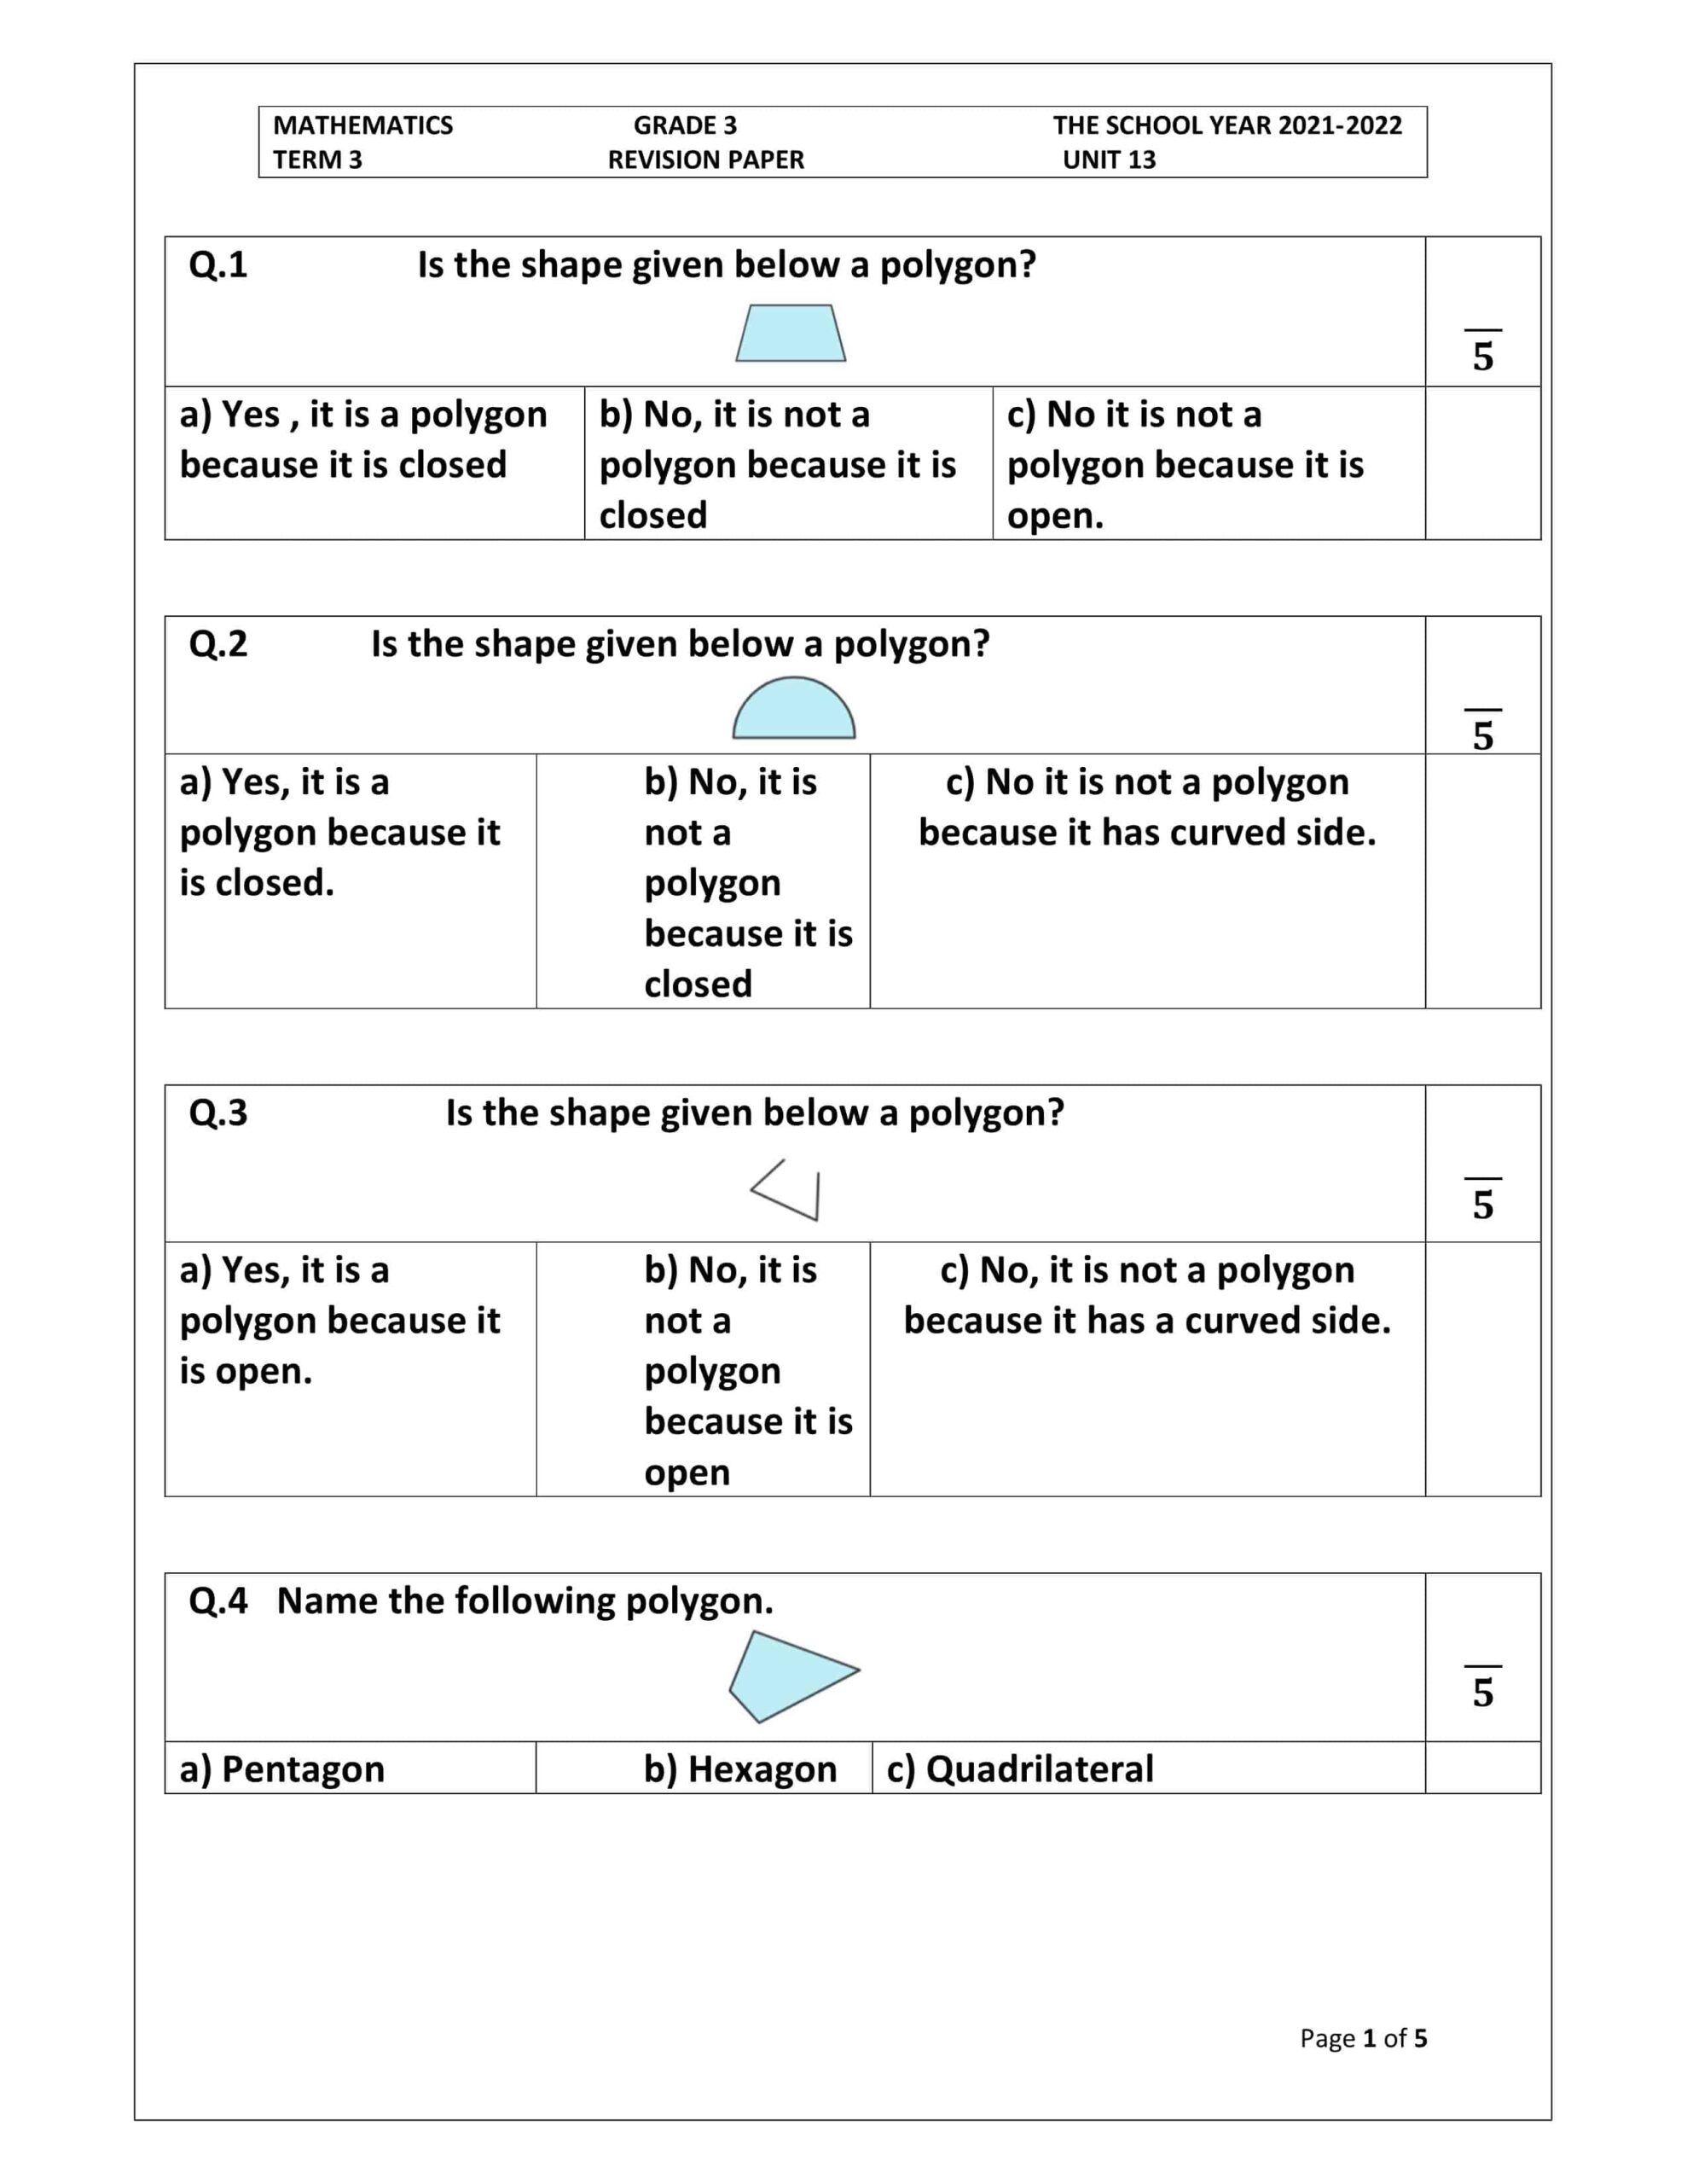 حل أوراق عمل REVISION PAPER UNIT 13 الرياضيات المتكاملة الصف الثالث